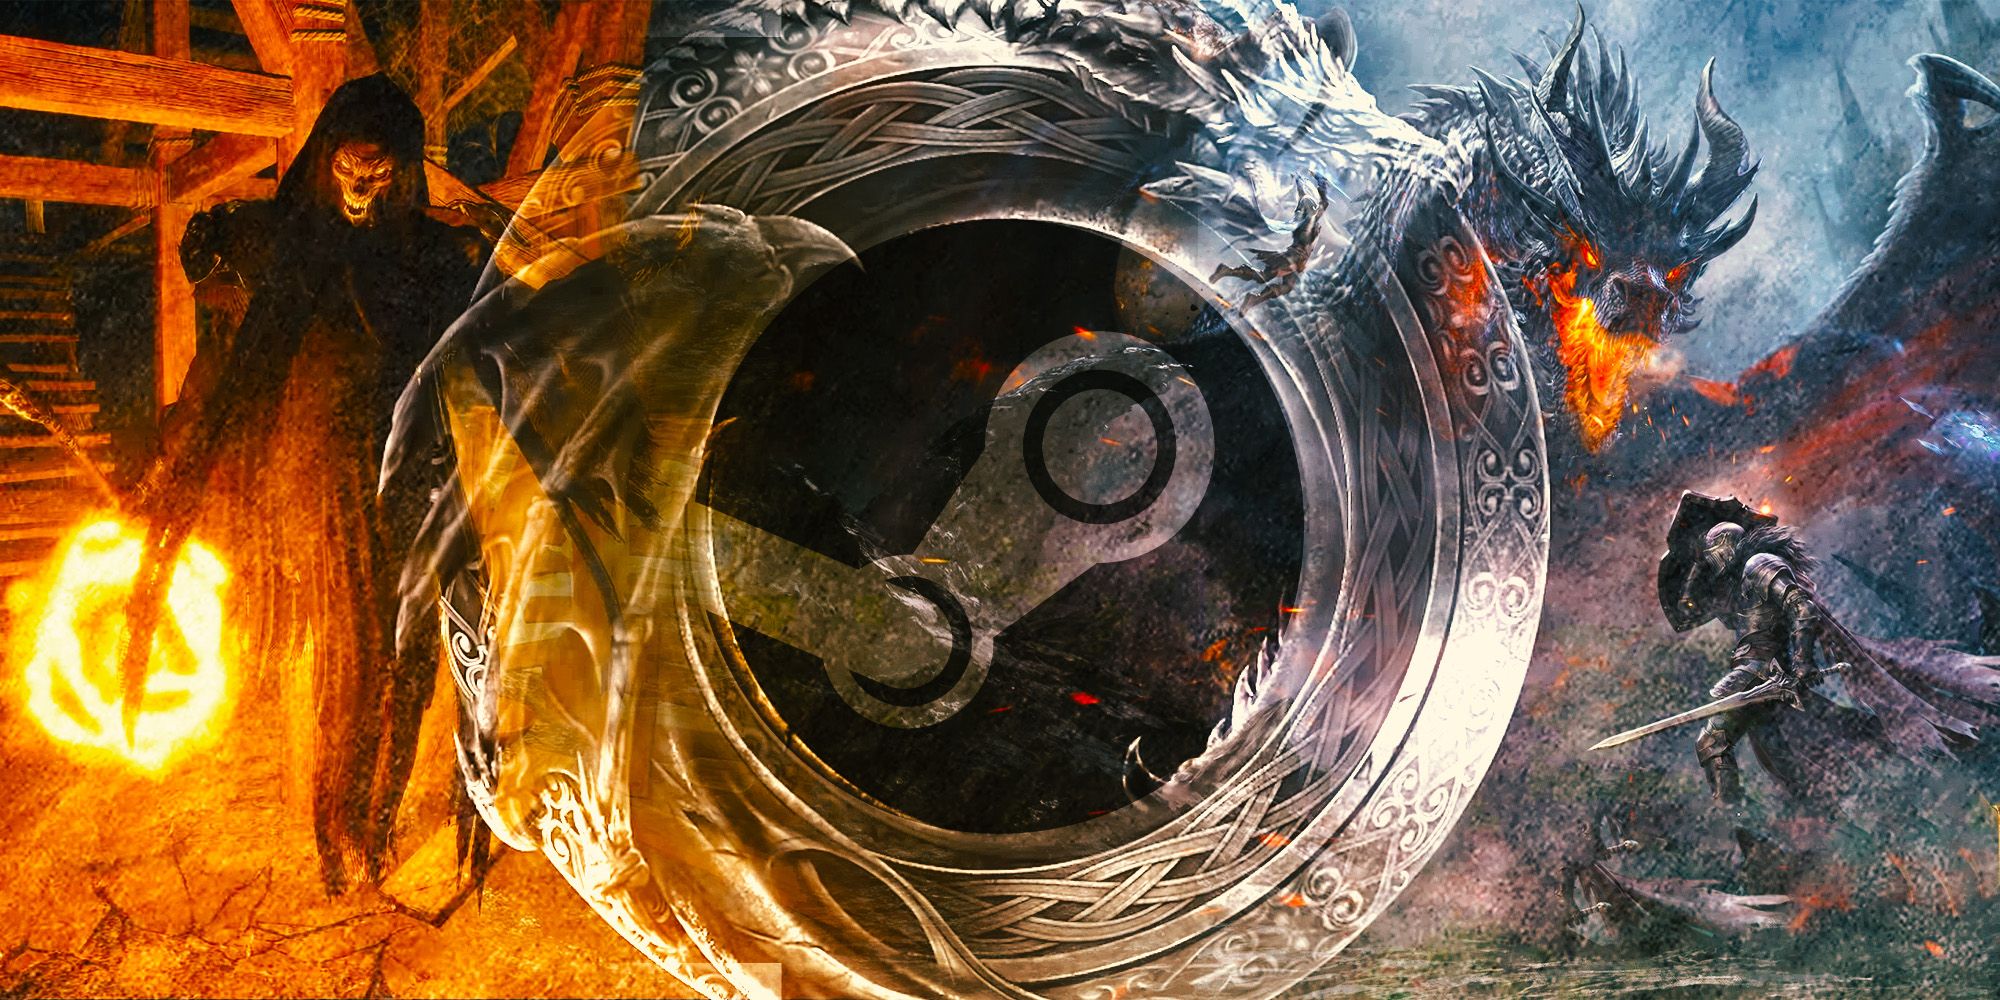 Dungeonborne artwork with the Steam logo